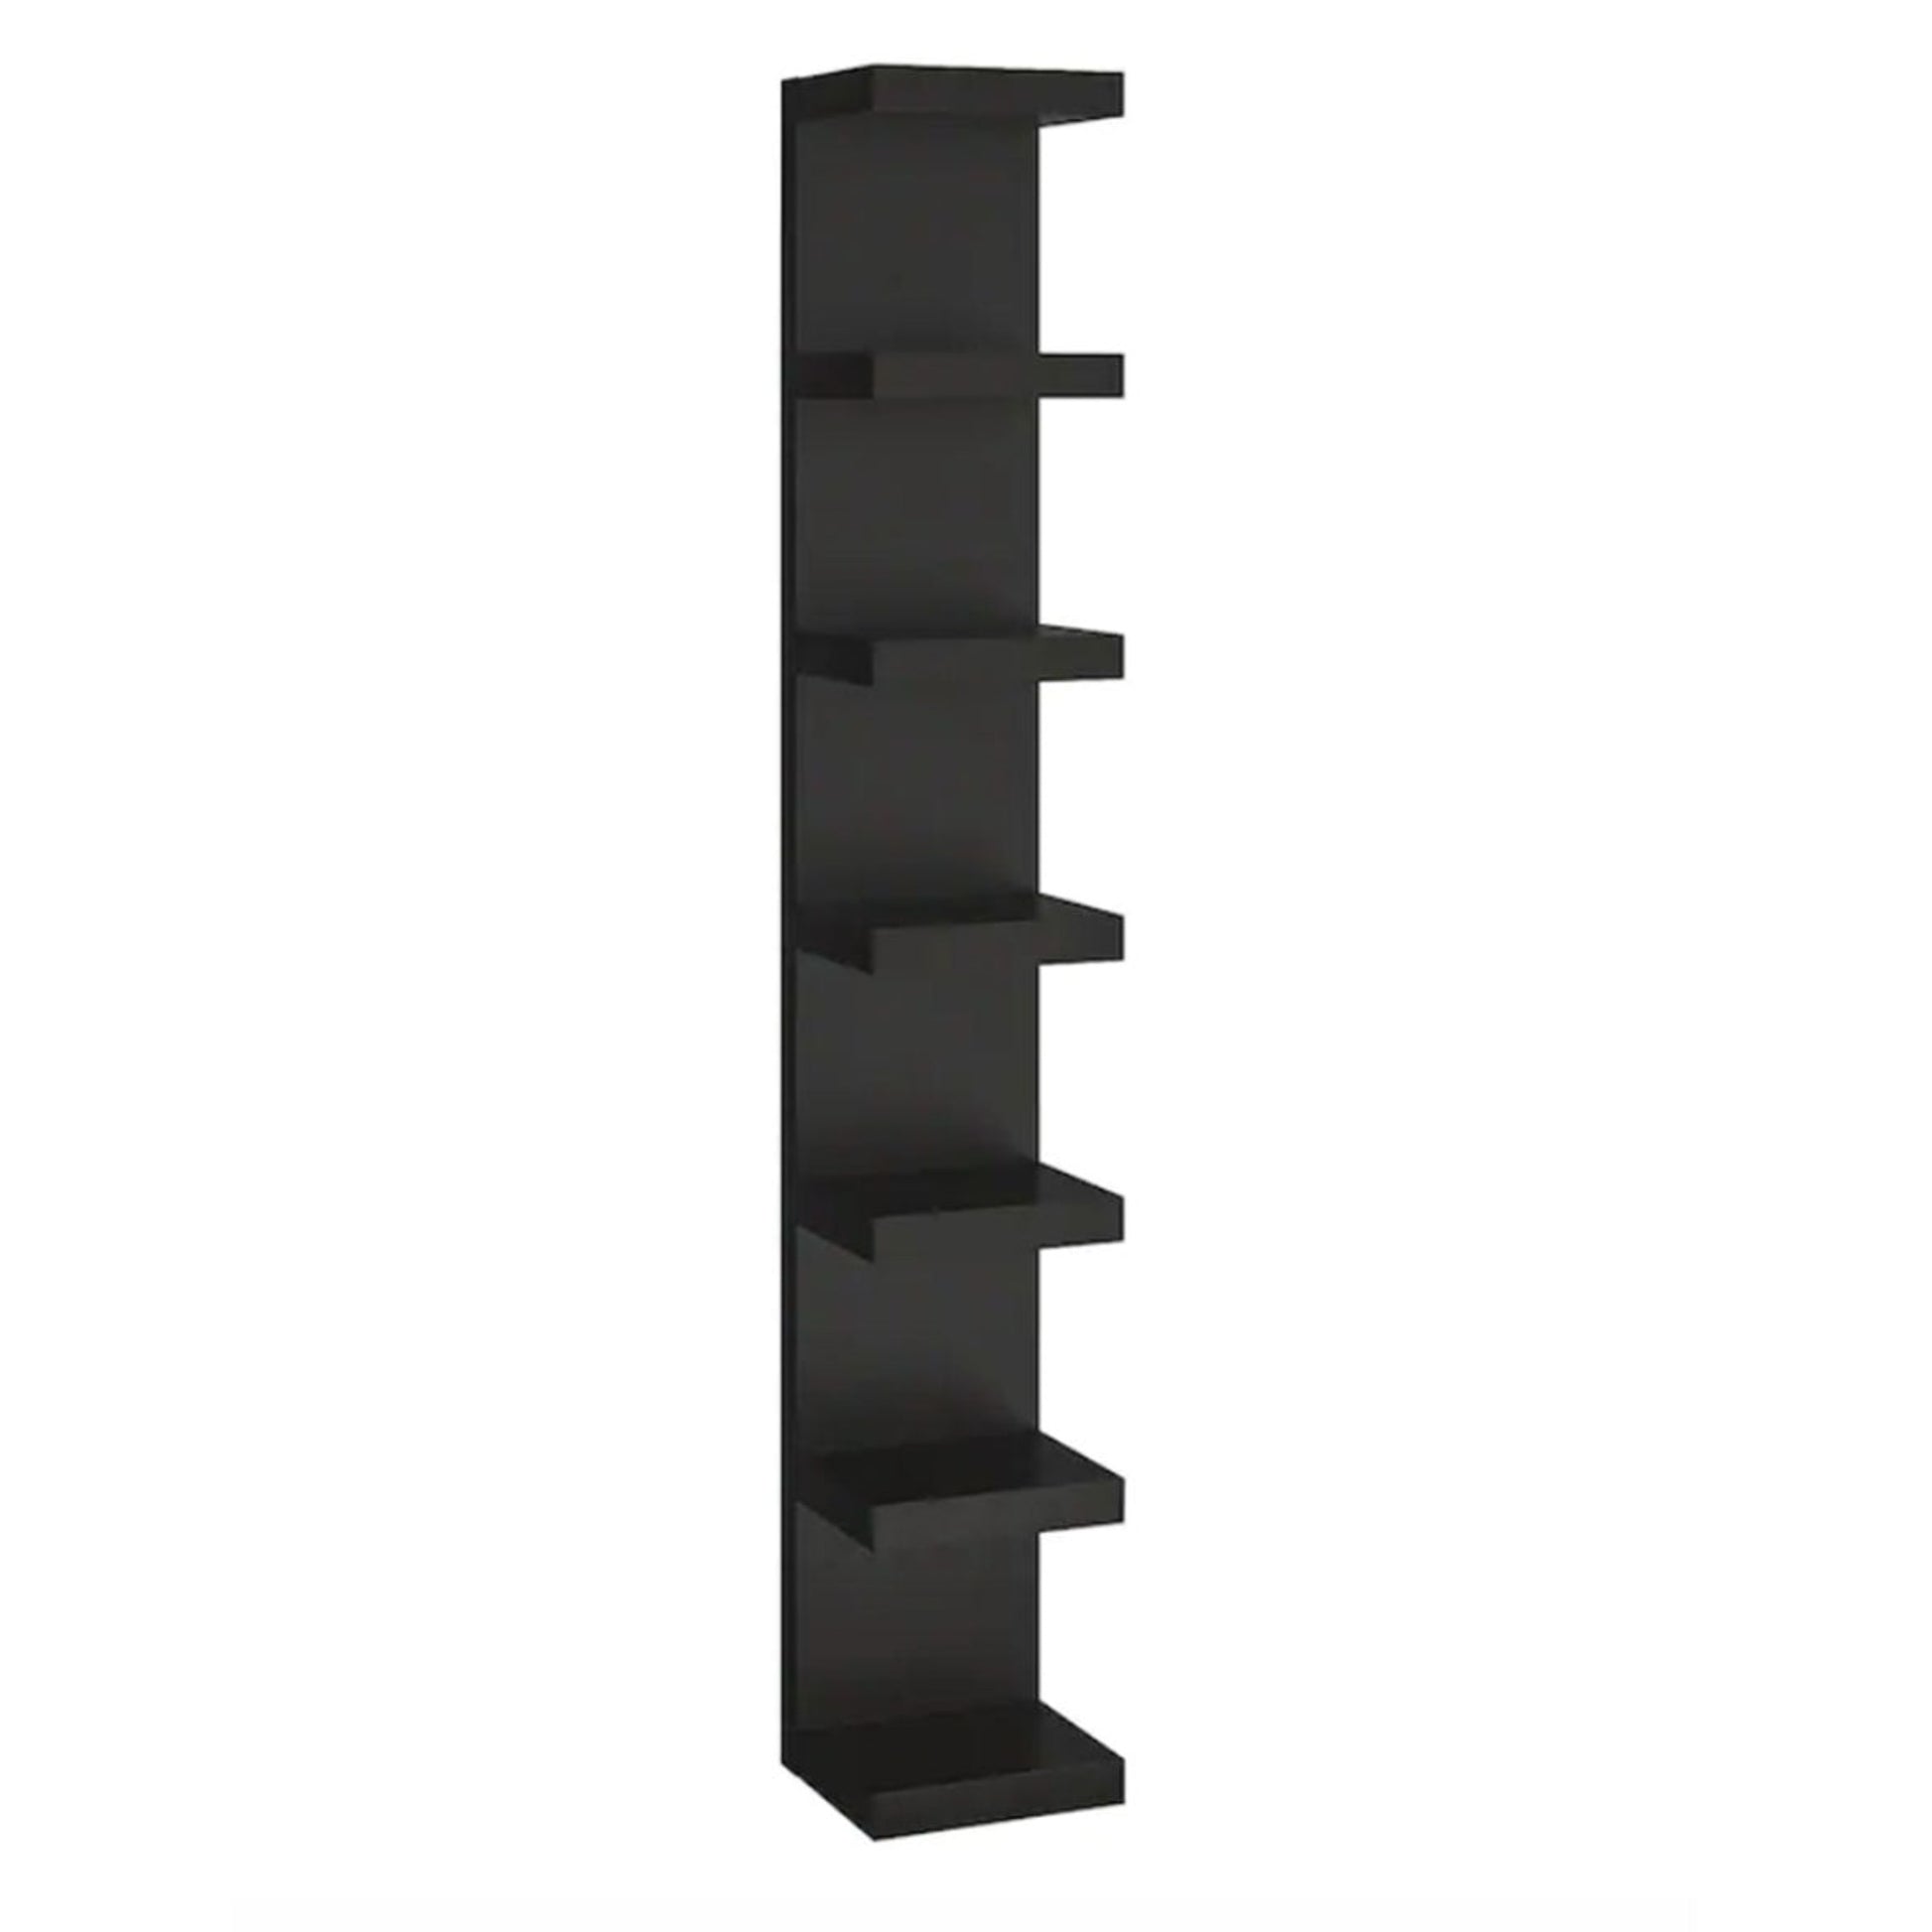 IKEA Lack Wall Shelf Unit 30x190cm, Black/Brown (3697894789)